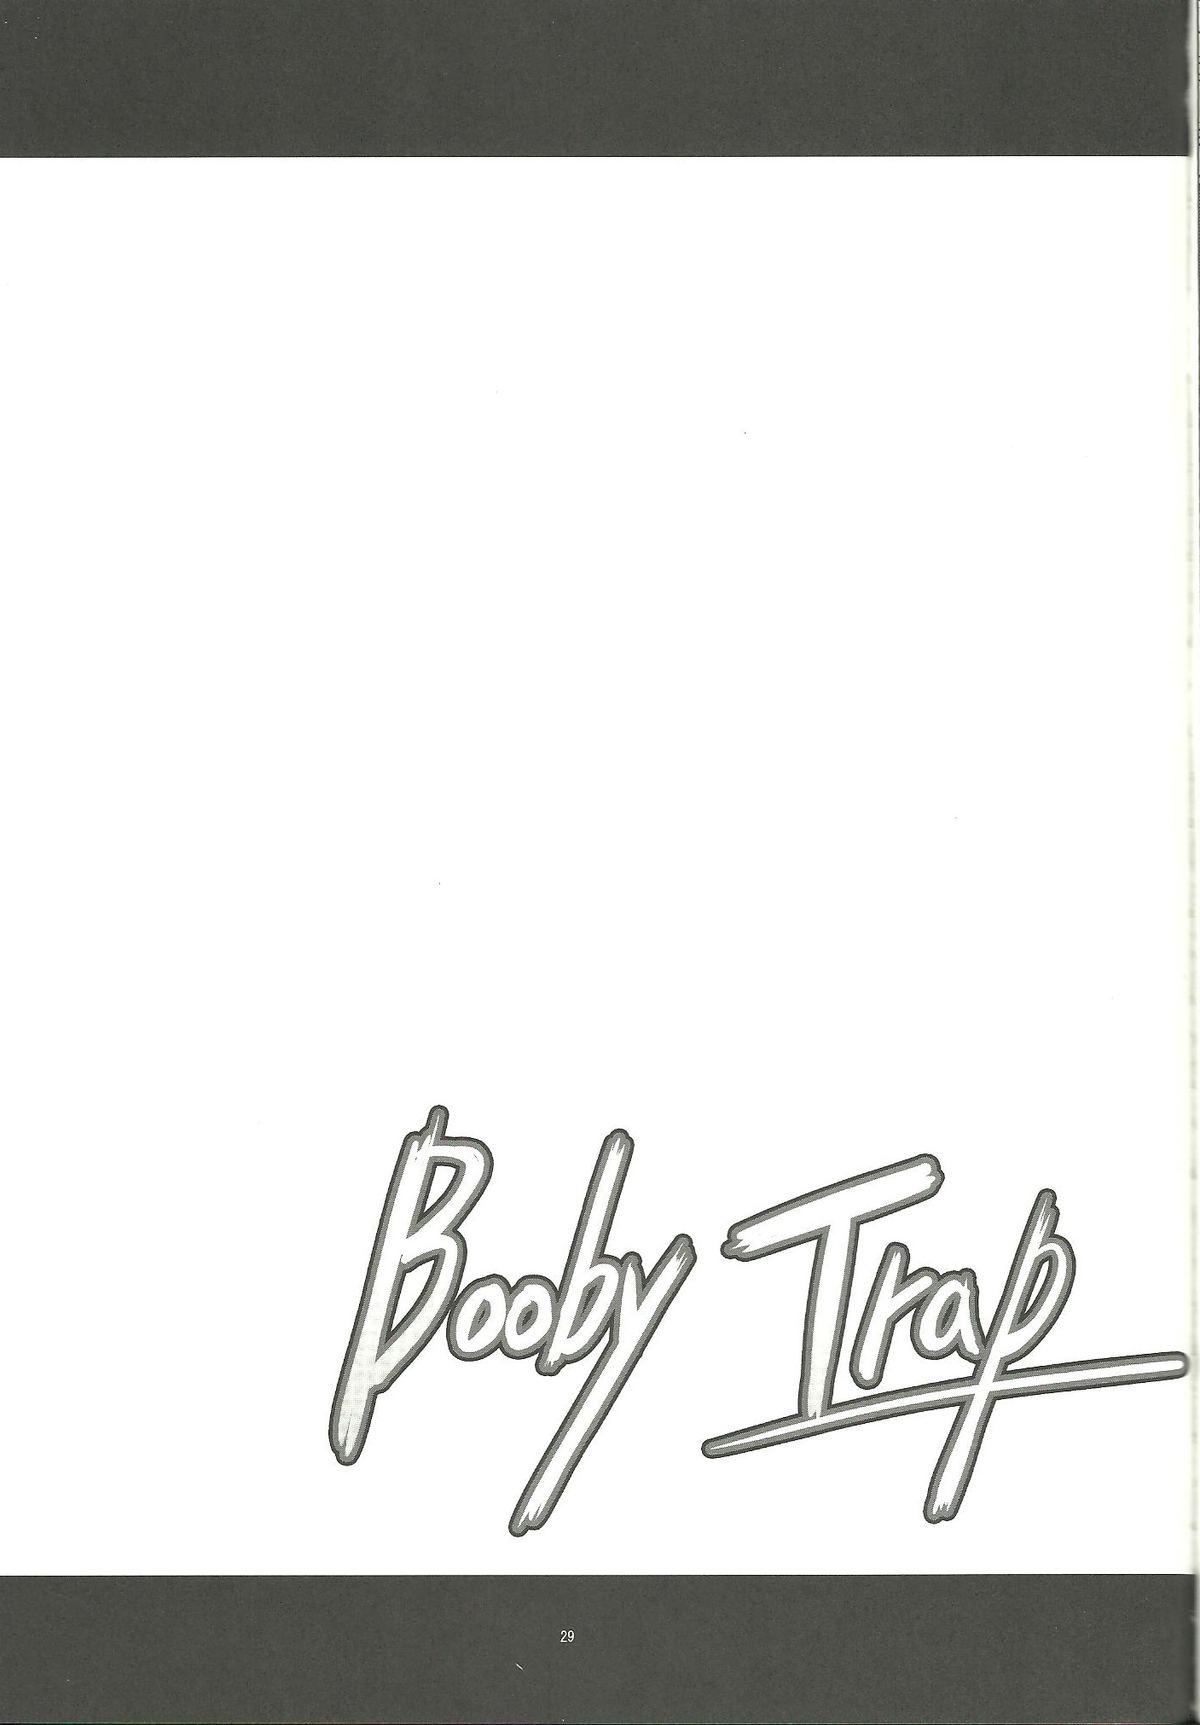 Booby Trap 28